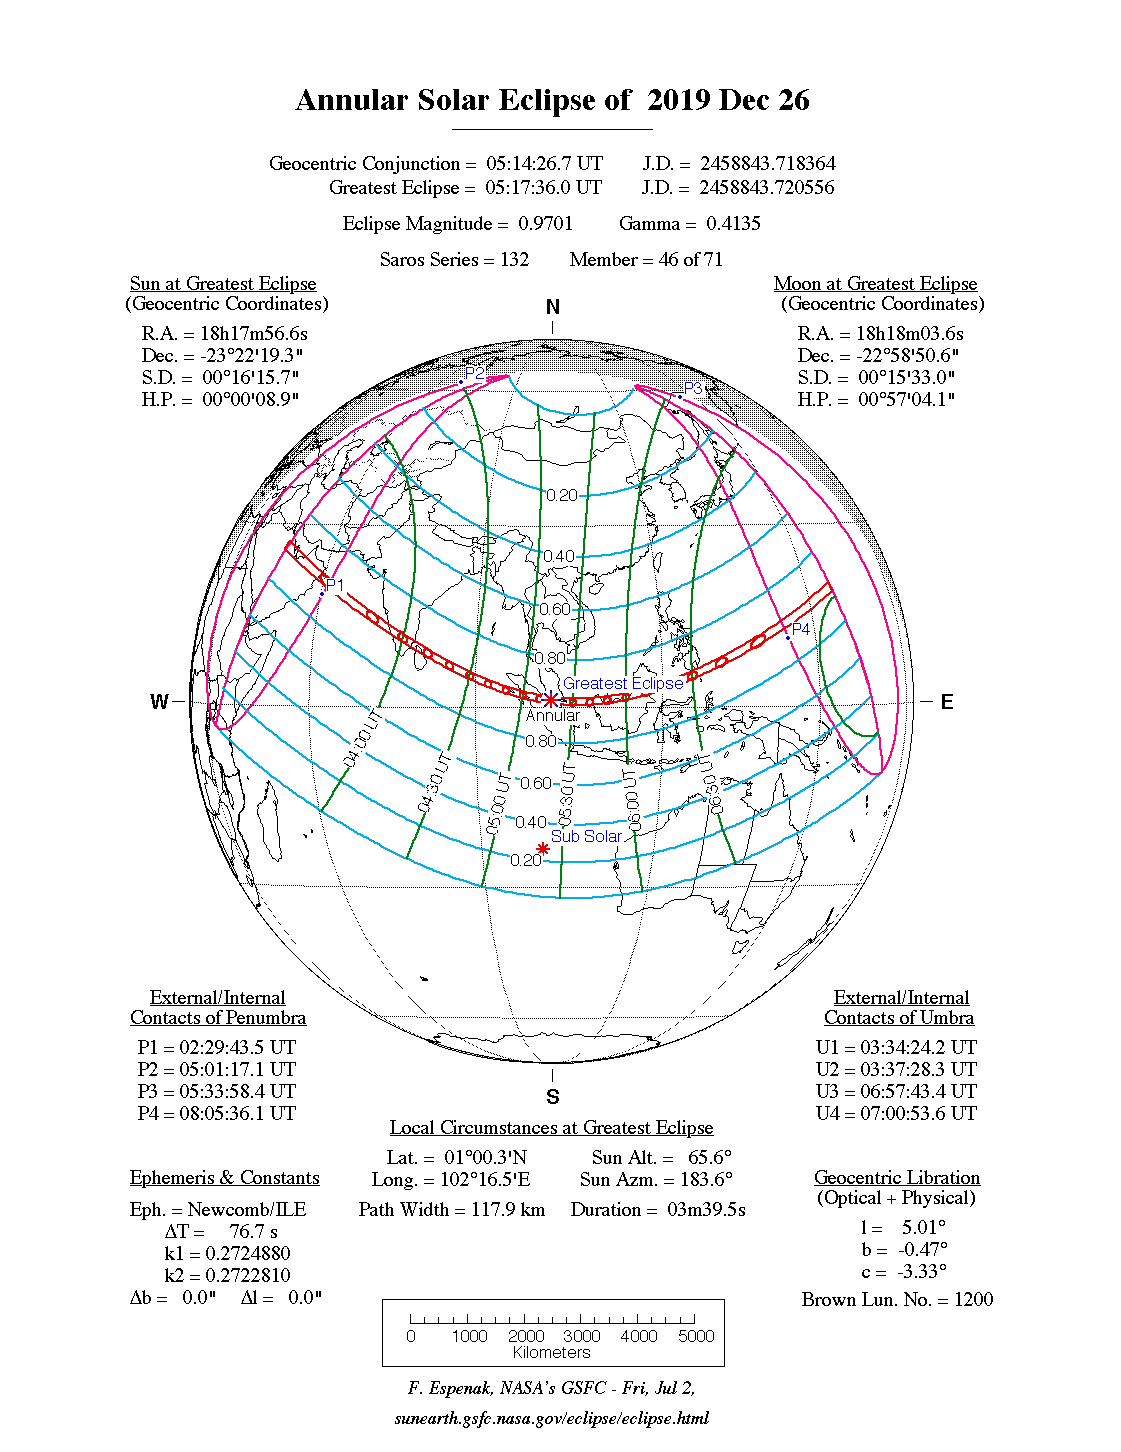 Verlauf der Ringförmigen Sonnenfinsternis am 26.12.2019